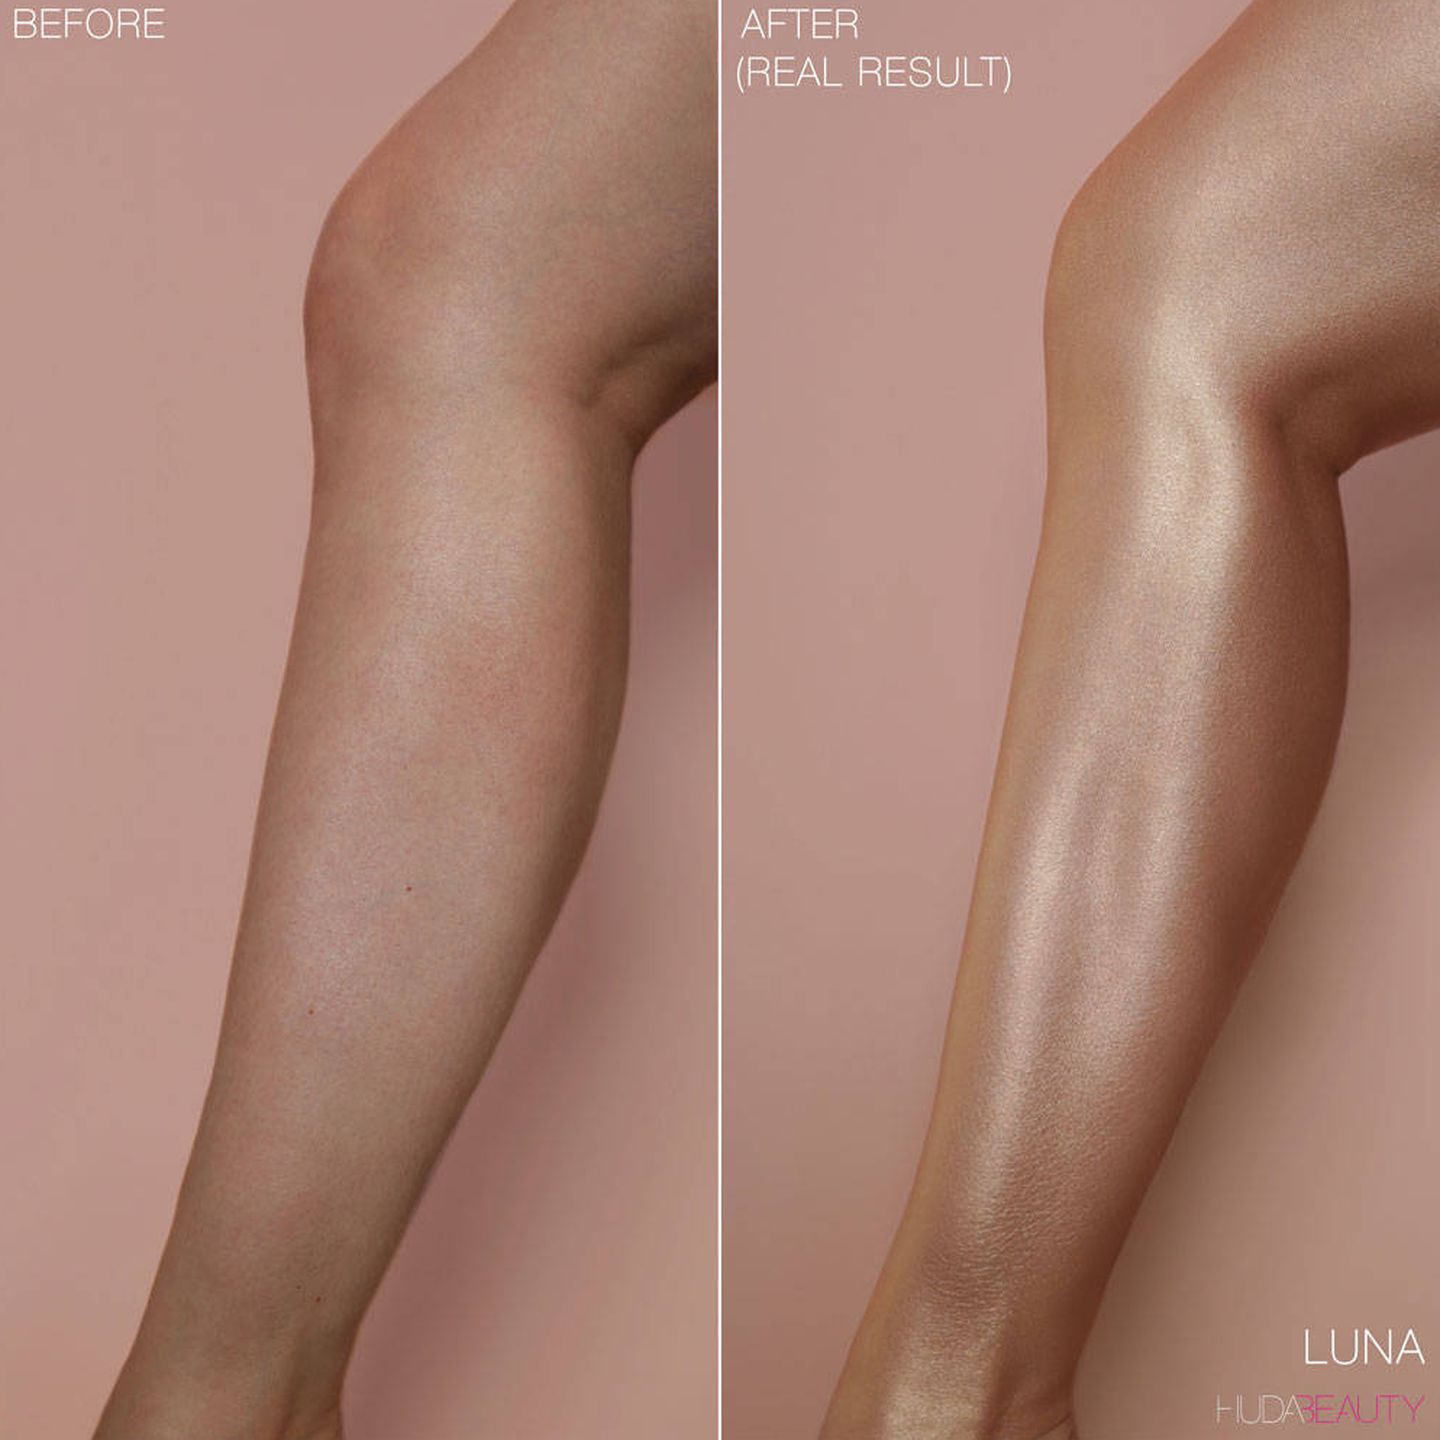 Antes y después de usar la crema bronceadora de Huda Beauty.